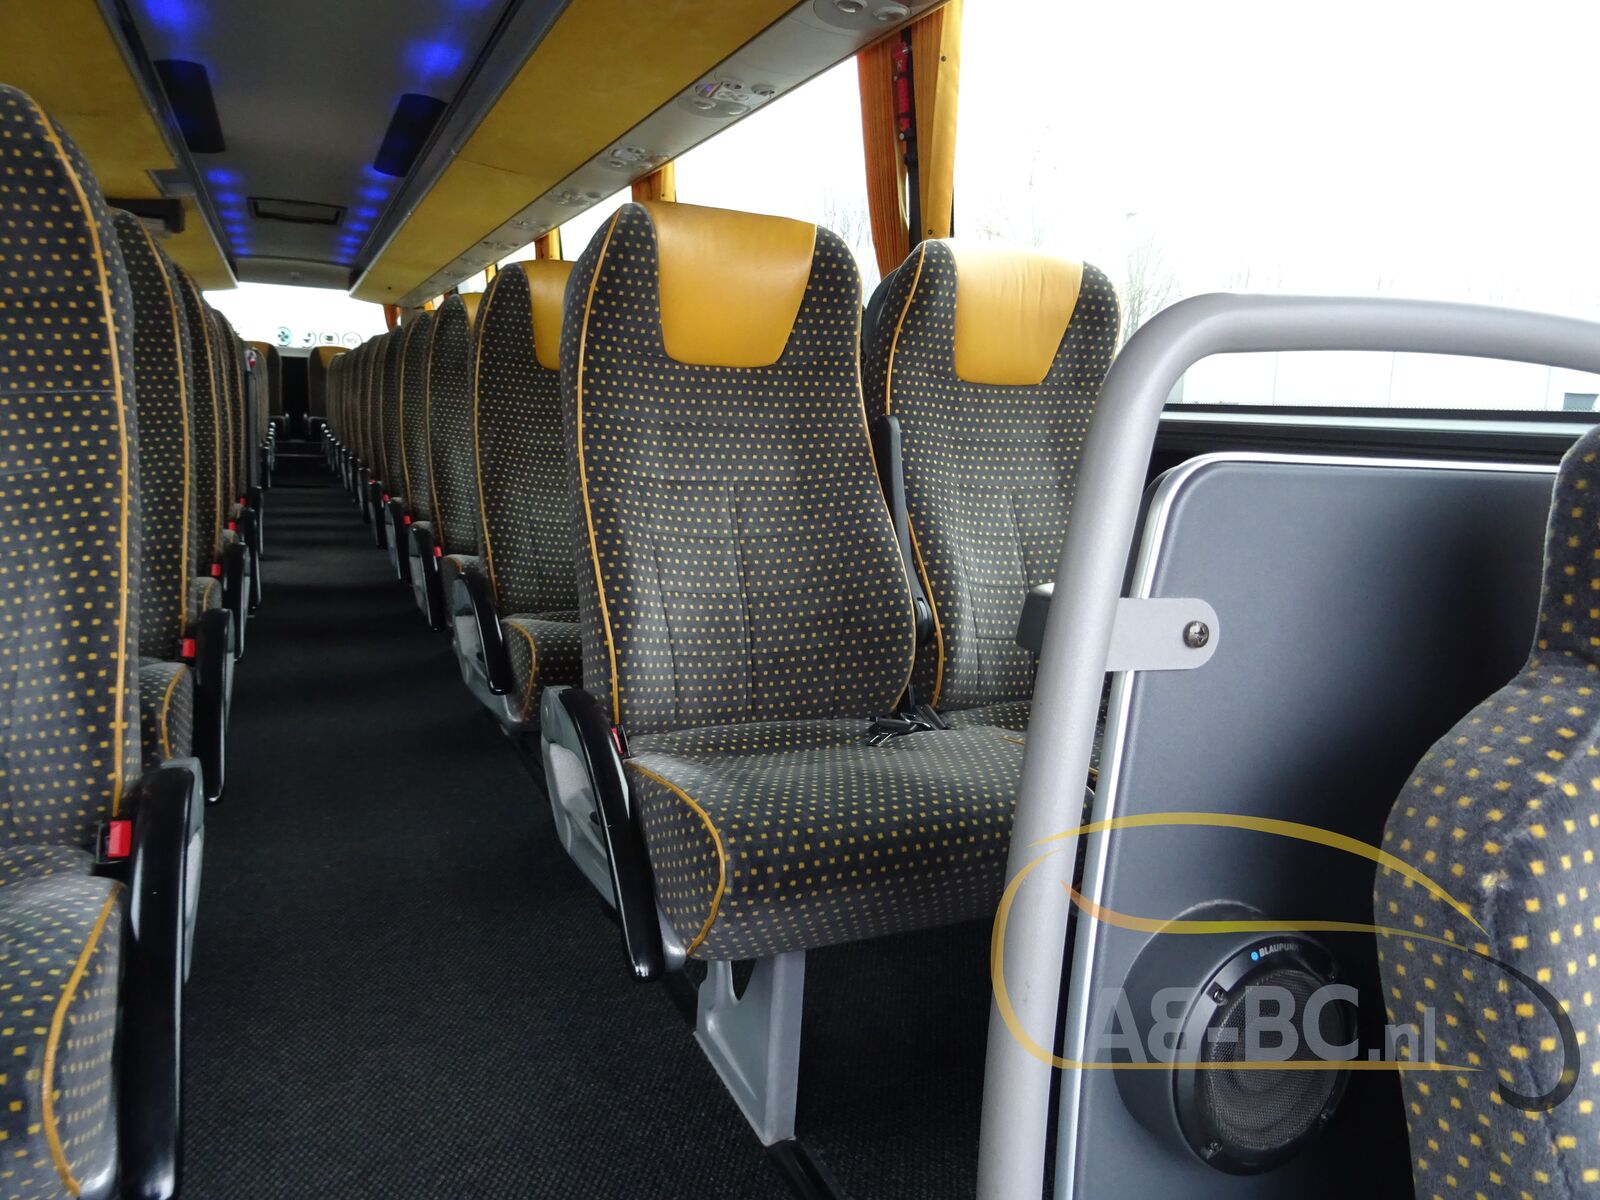 coach-bus-VDL-BOVA-Magiq-54-Seats-EURO-5---1642160416346371062_orig_ffa1935d7638a30df8840f021364d739--22011413334676017500